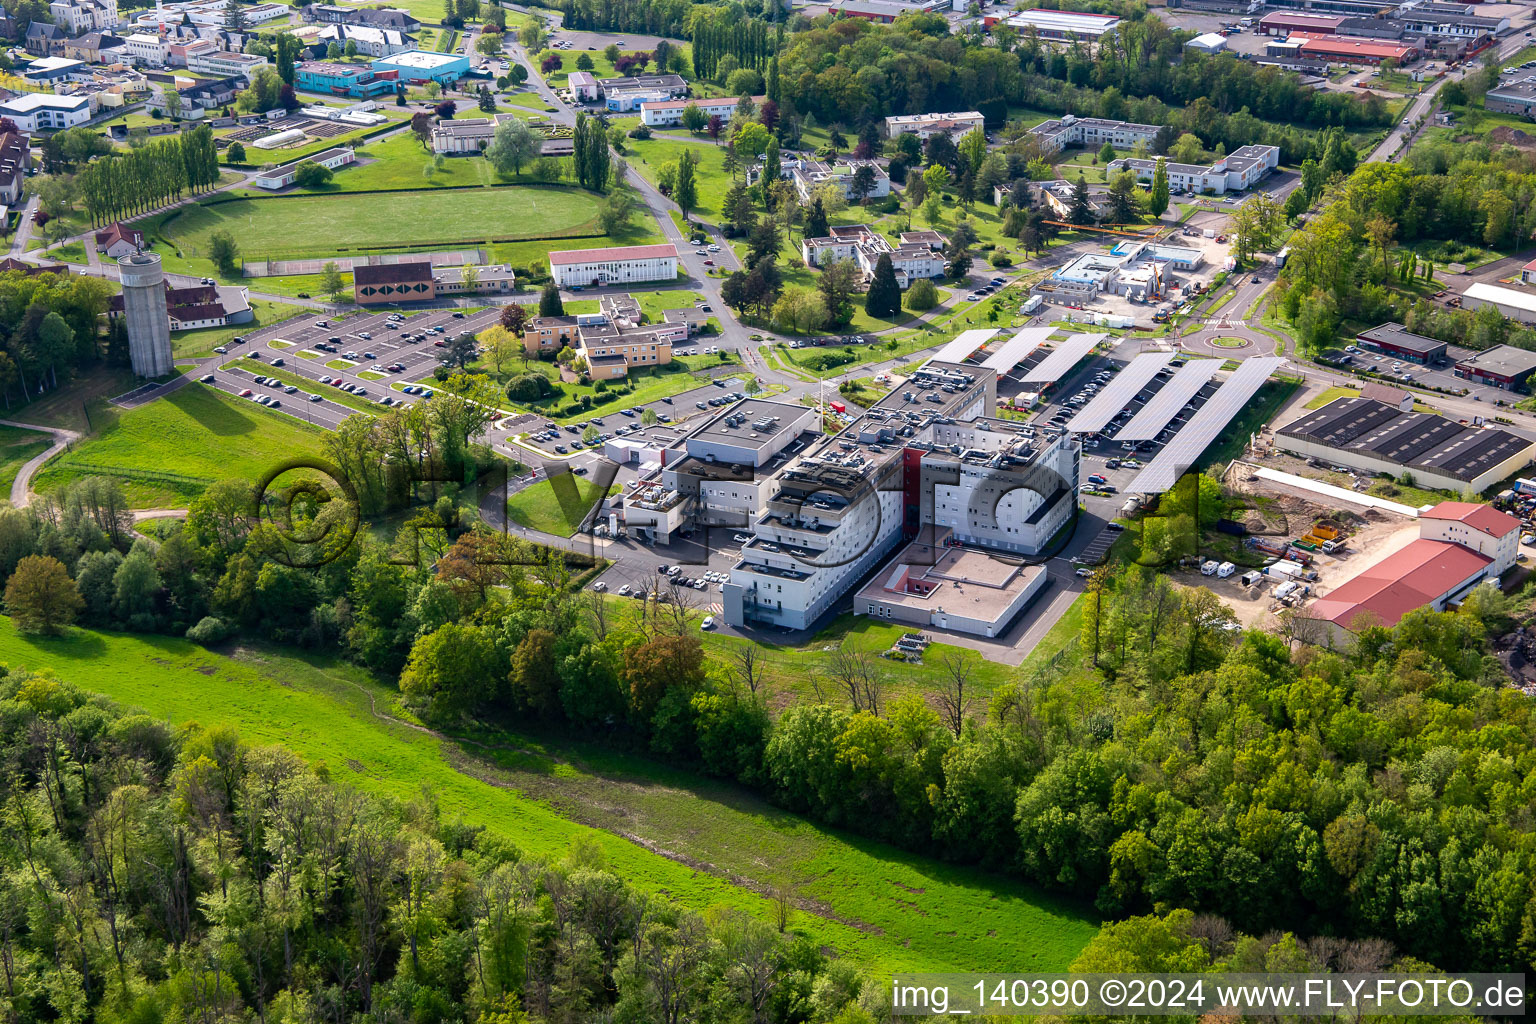 Hospital Robert-Pax im Ortsteil Zone Industrielle du Grand Bois Fayencerie in Saargemünd im Bundesland Moselle, Frankreich